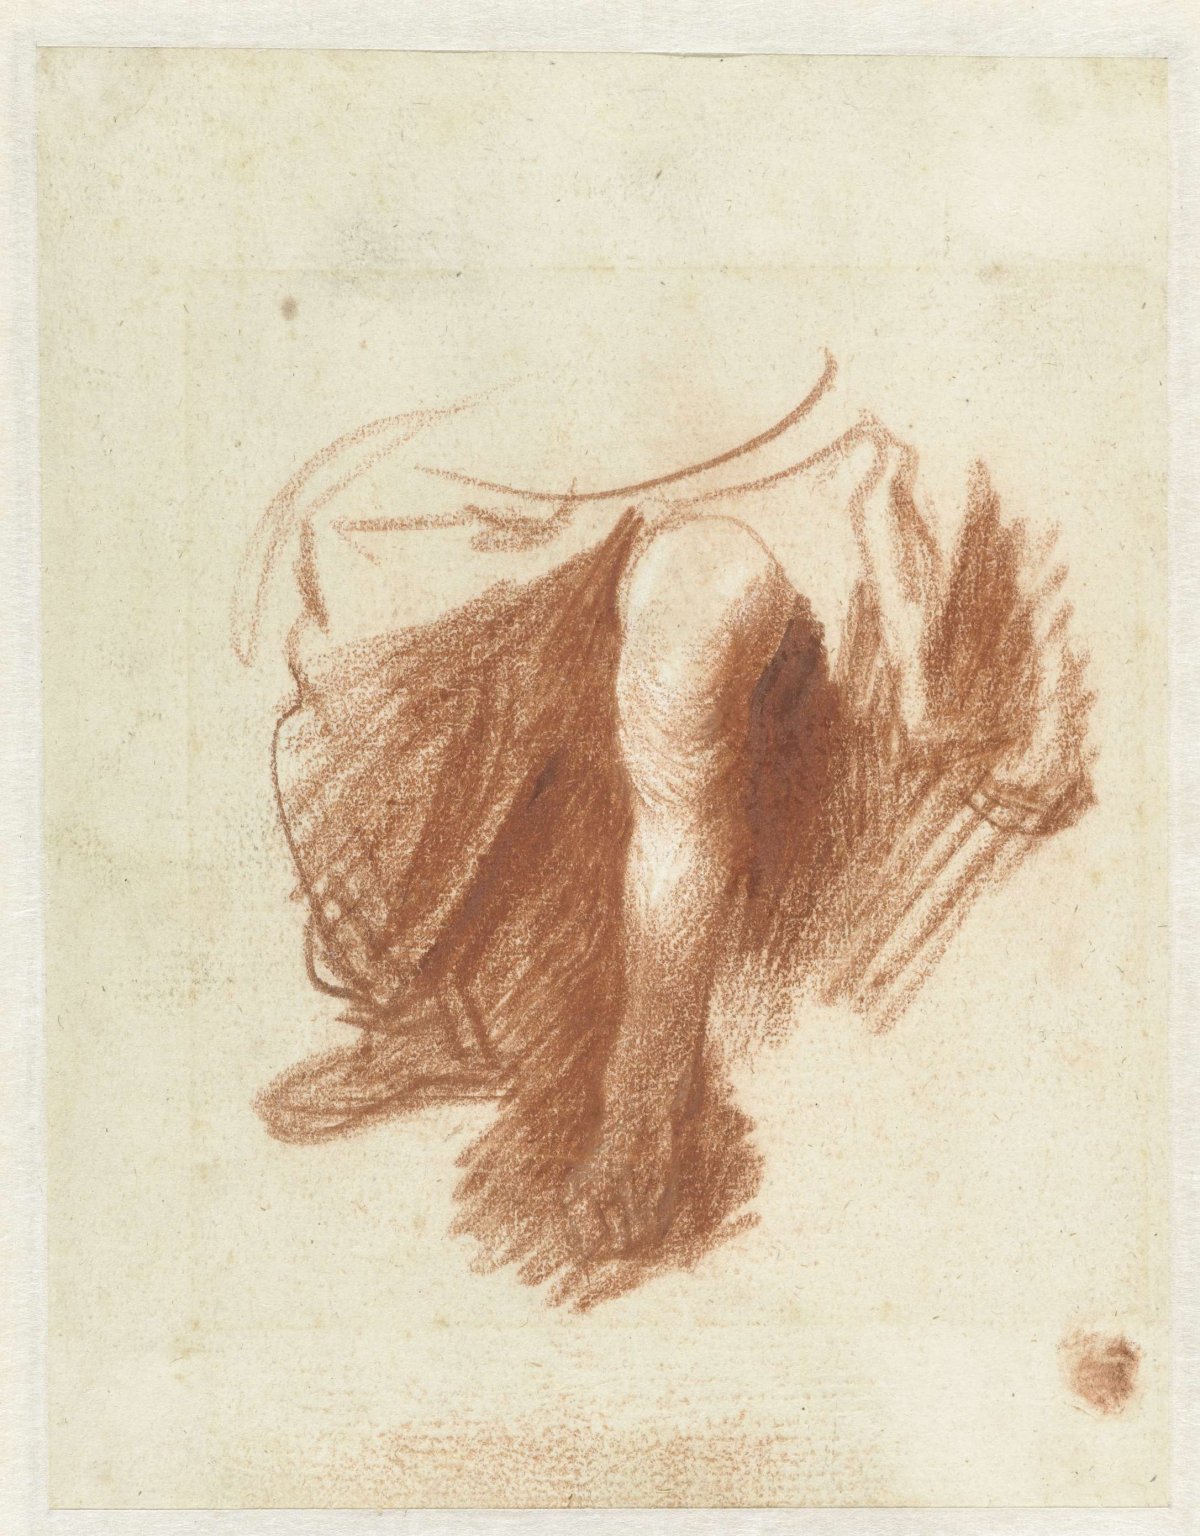 Study of a Woman’s Legs, Rembrandt van Rijn, c. 1628 - c. 1629